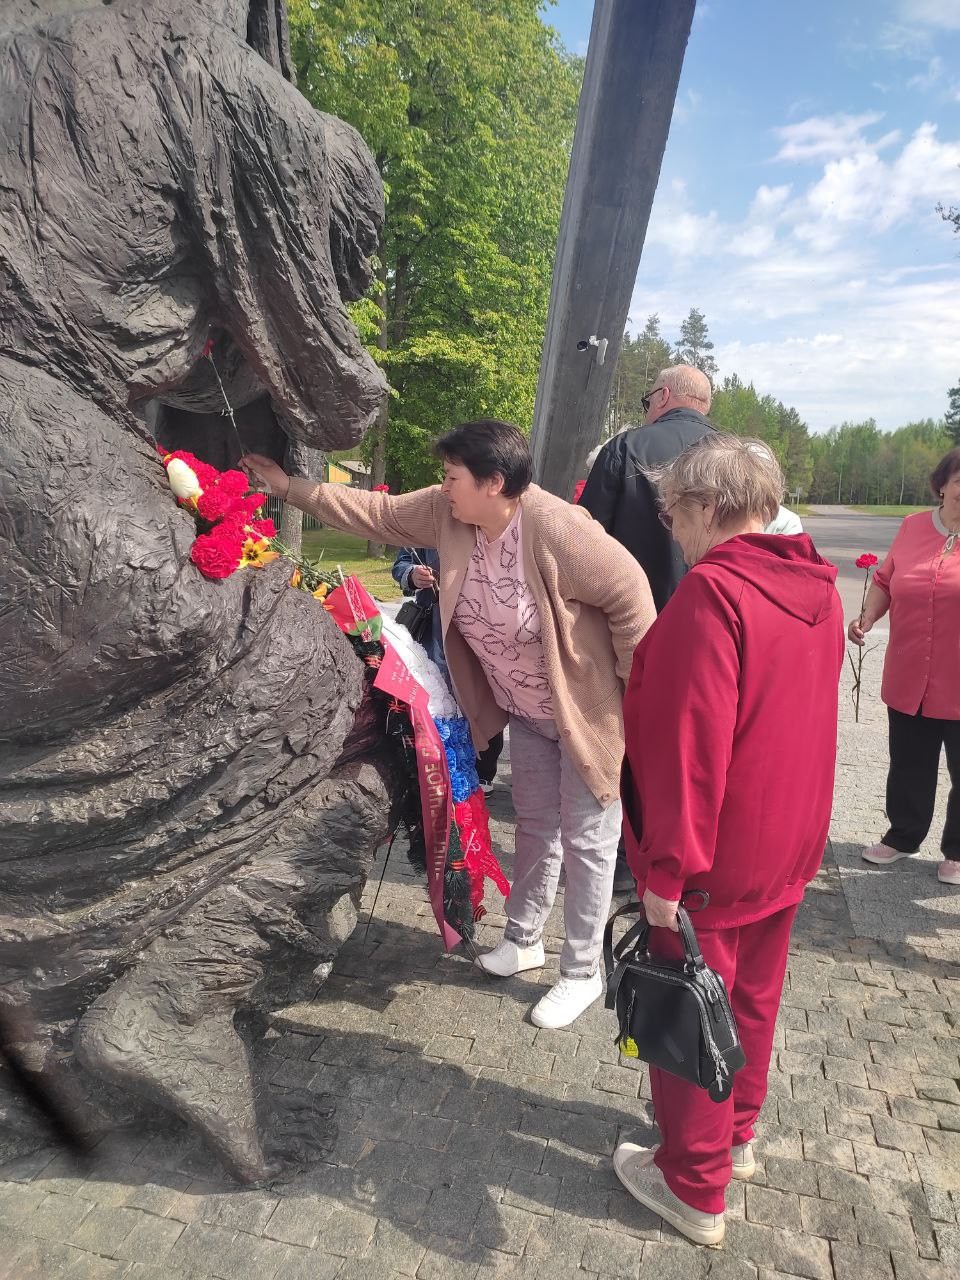 Туристическая поездка ветеранов фабрики по историко-культурным объектам Могилевской области состоялась 17 мая.